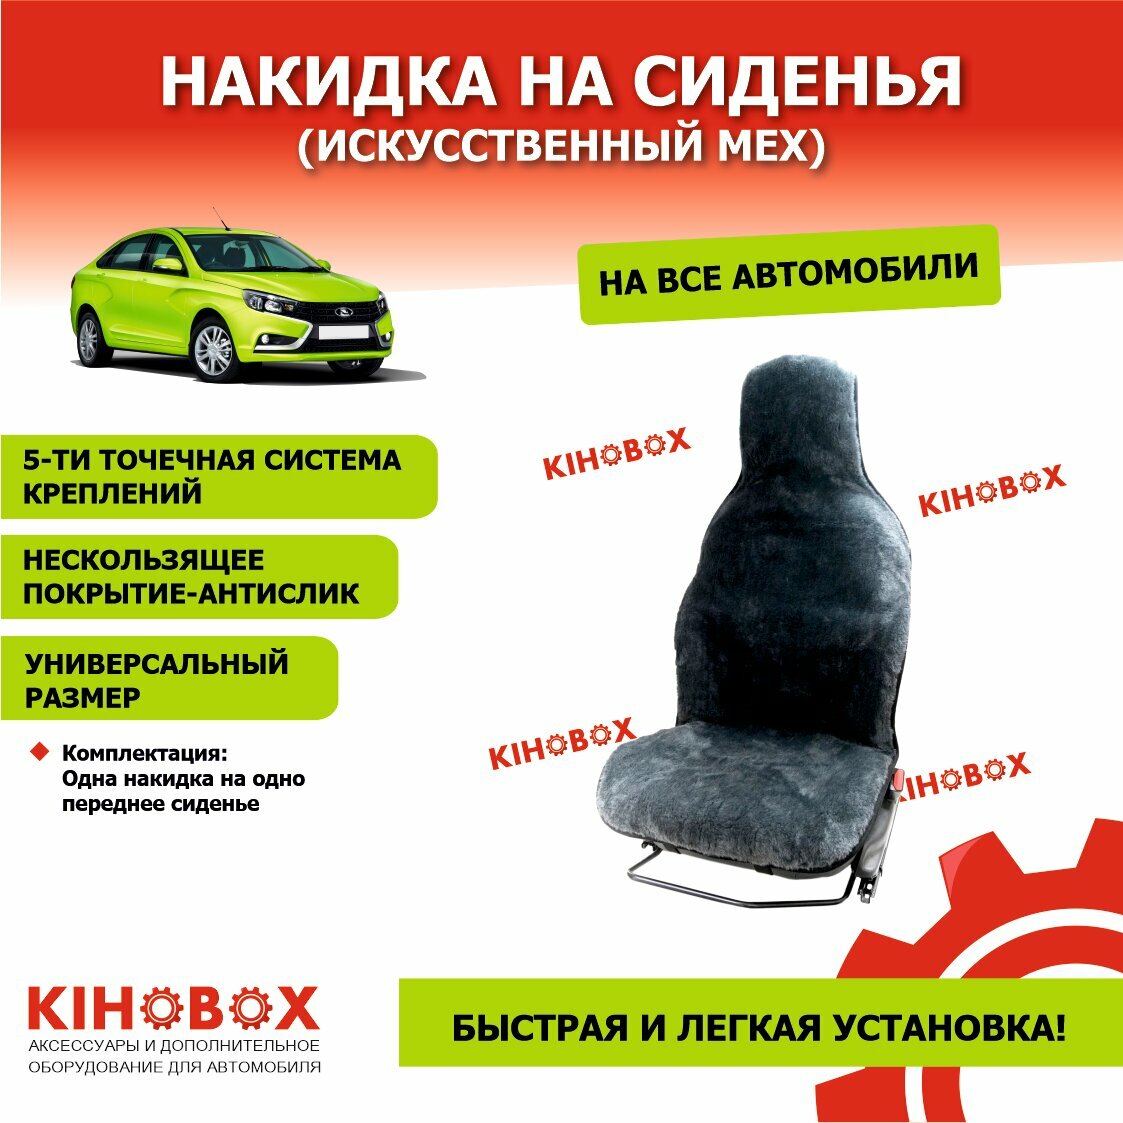 Накидка на сиденье из искусственного меха цвет серый (Высота ворса 0,7 - 1,0 см) -1 шт KIHOBOX АРТ 240115